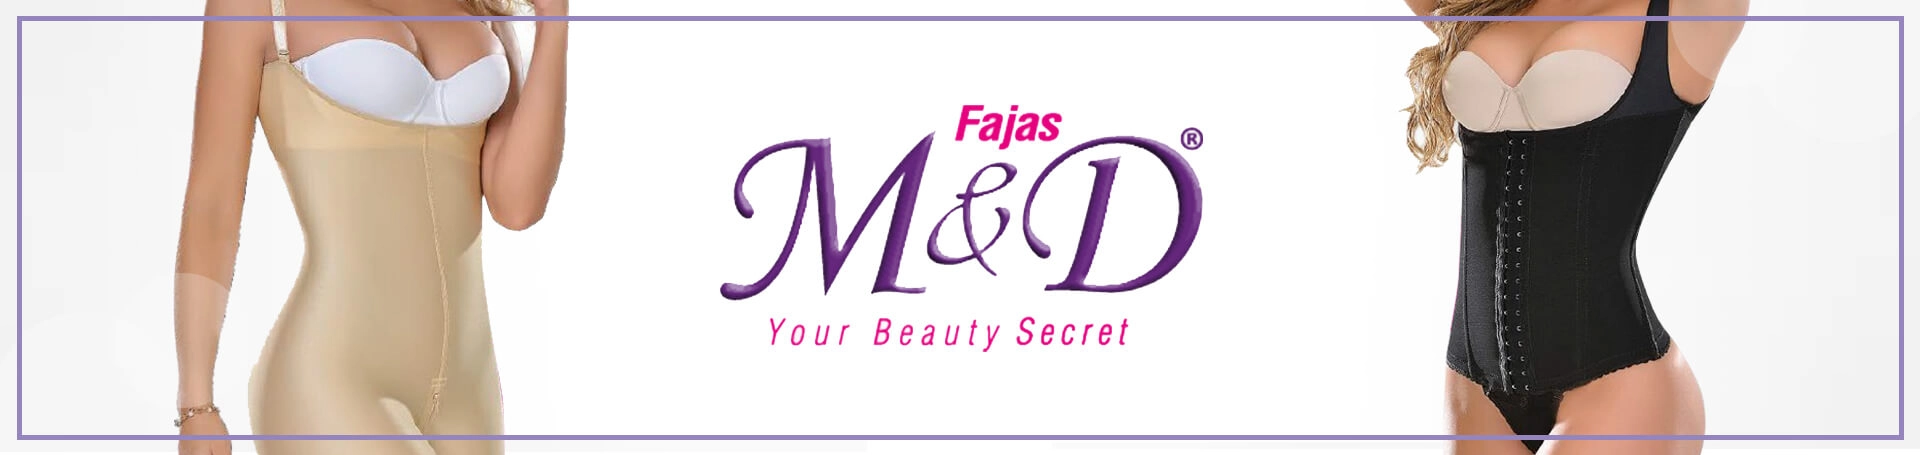 Just Dropped: New Fajas M&D! - Shapewear USA